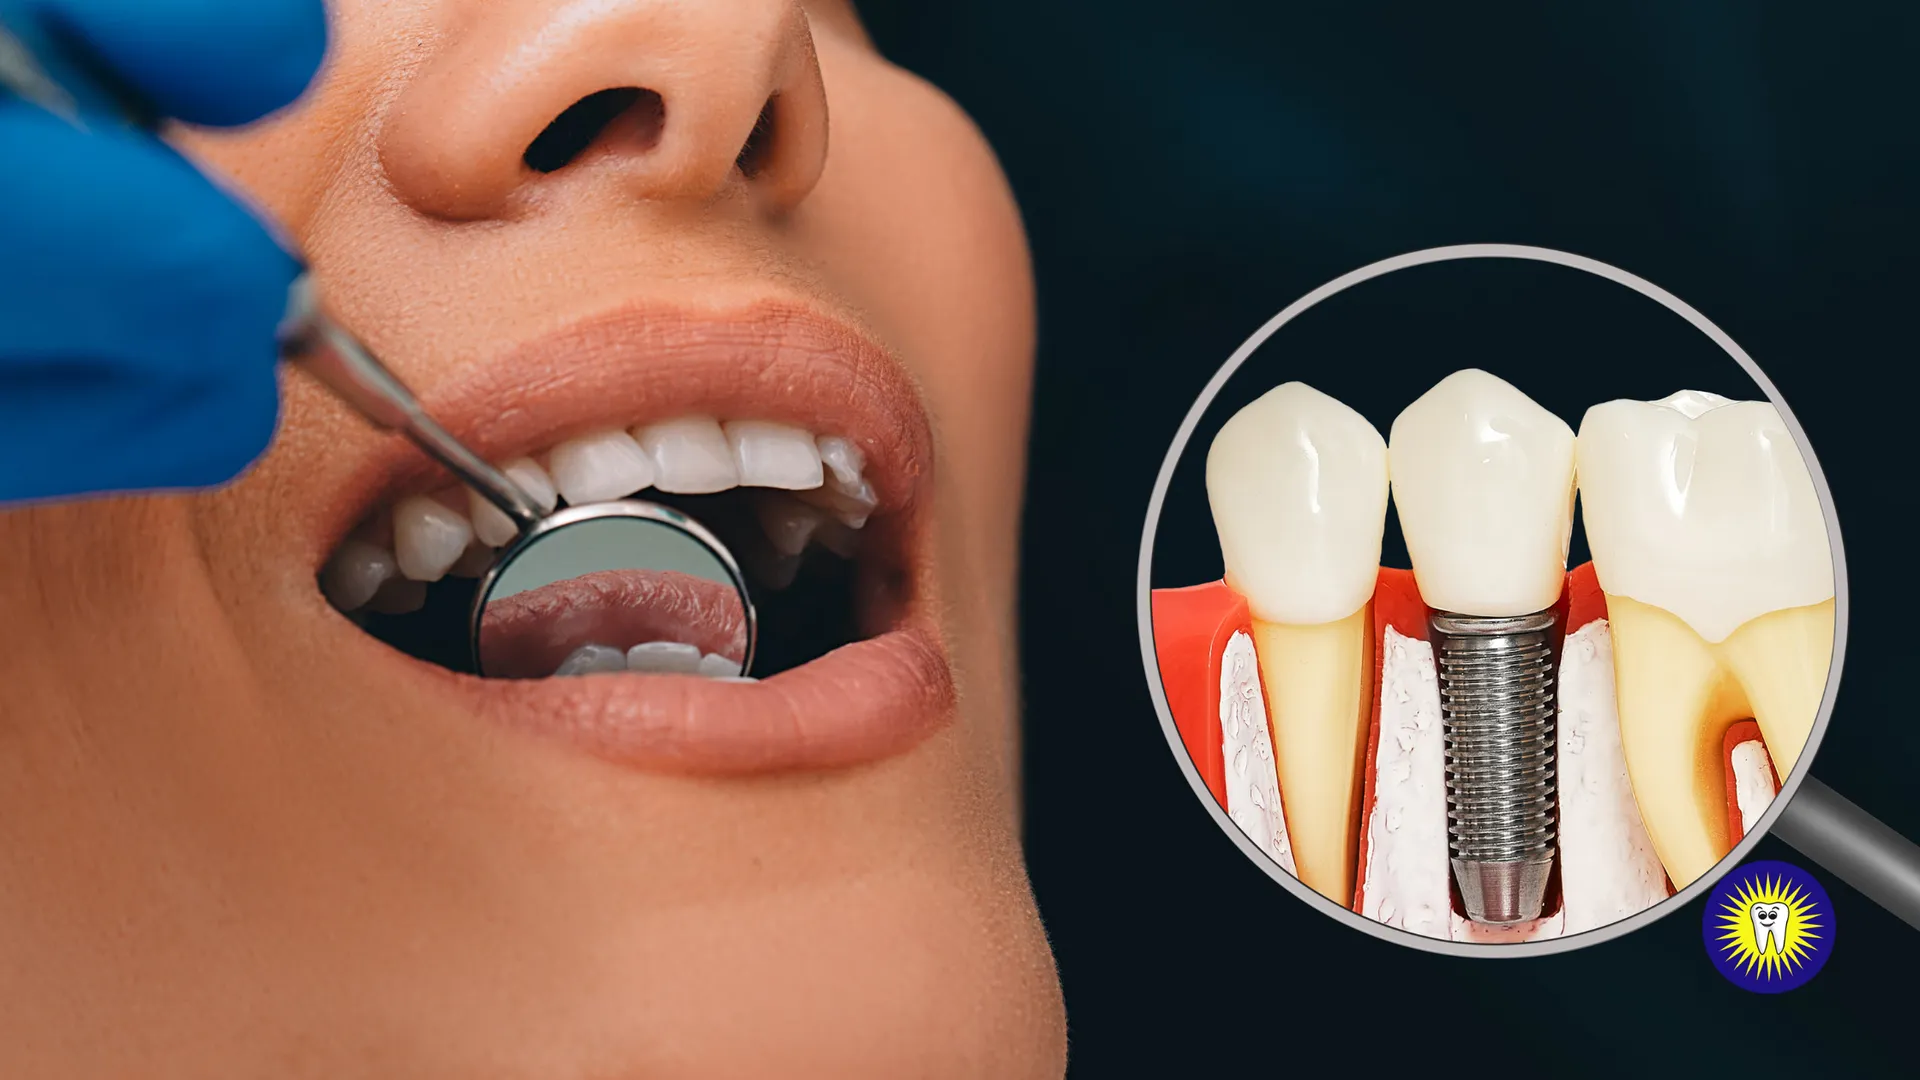 Dental implant risks